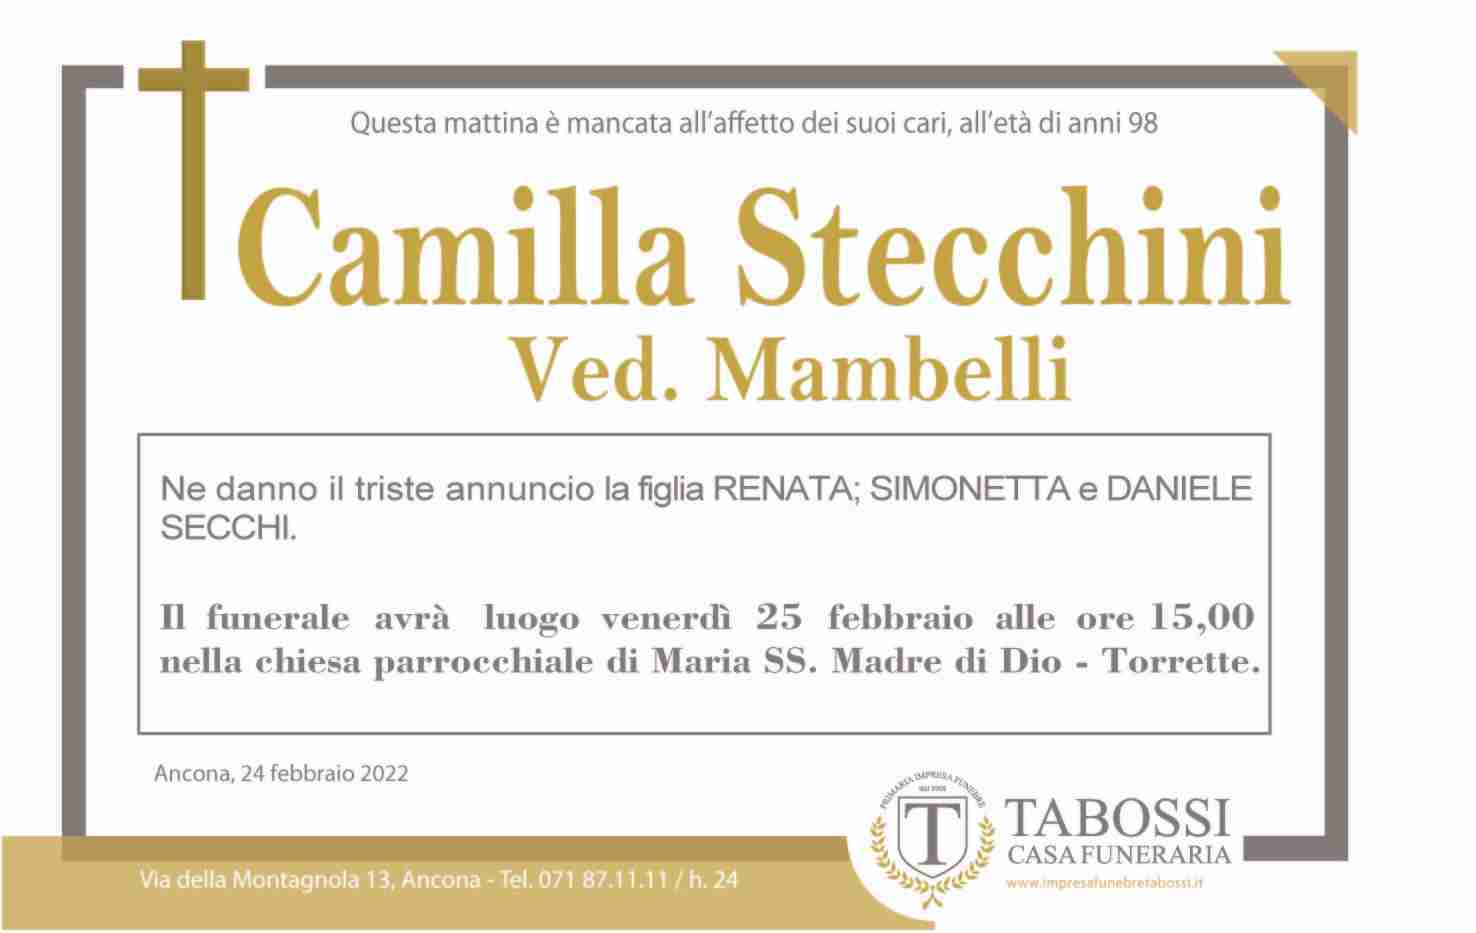 Camilla Stecchini